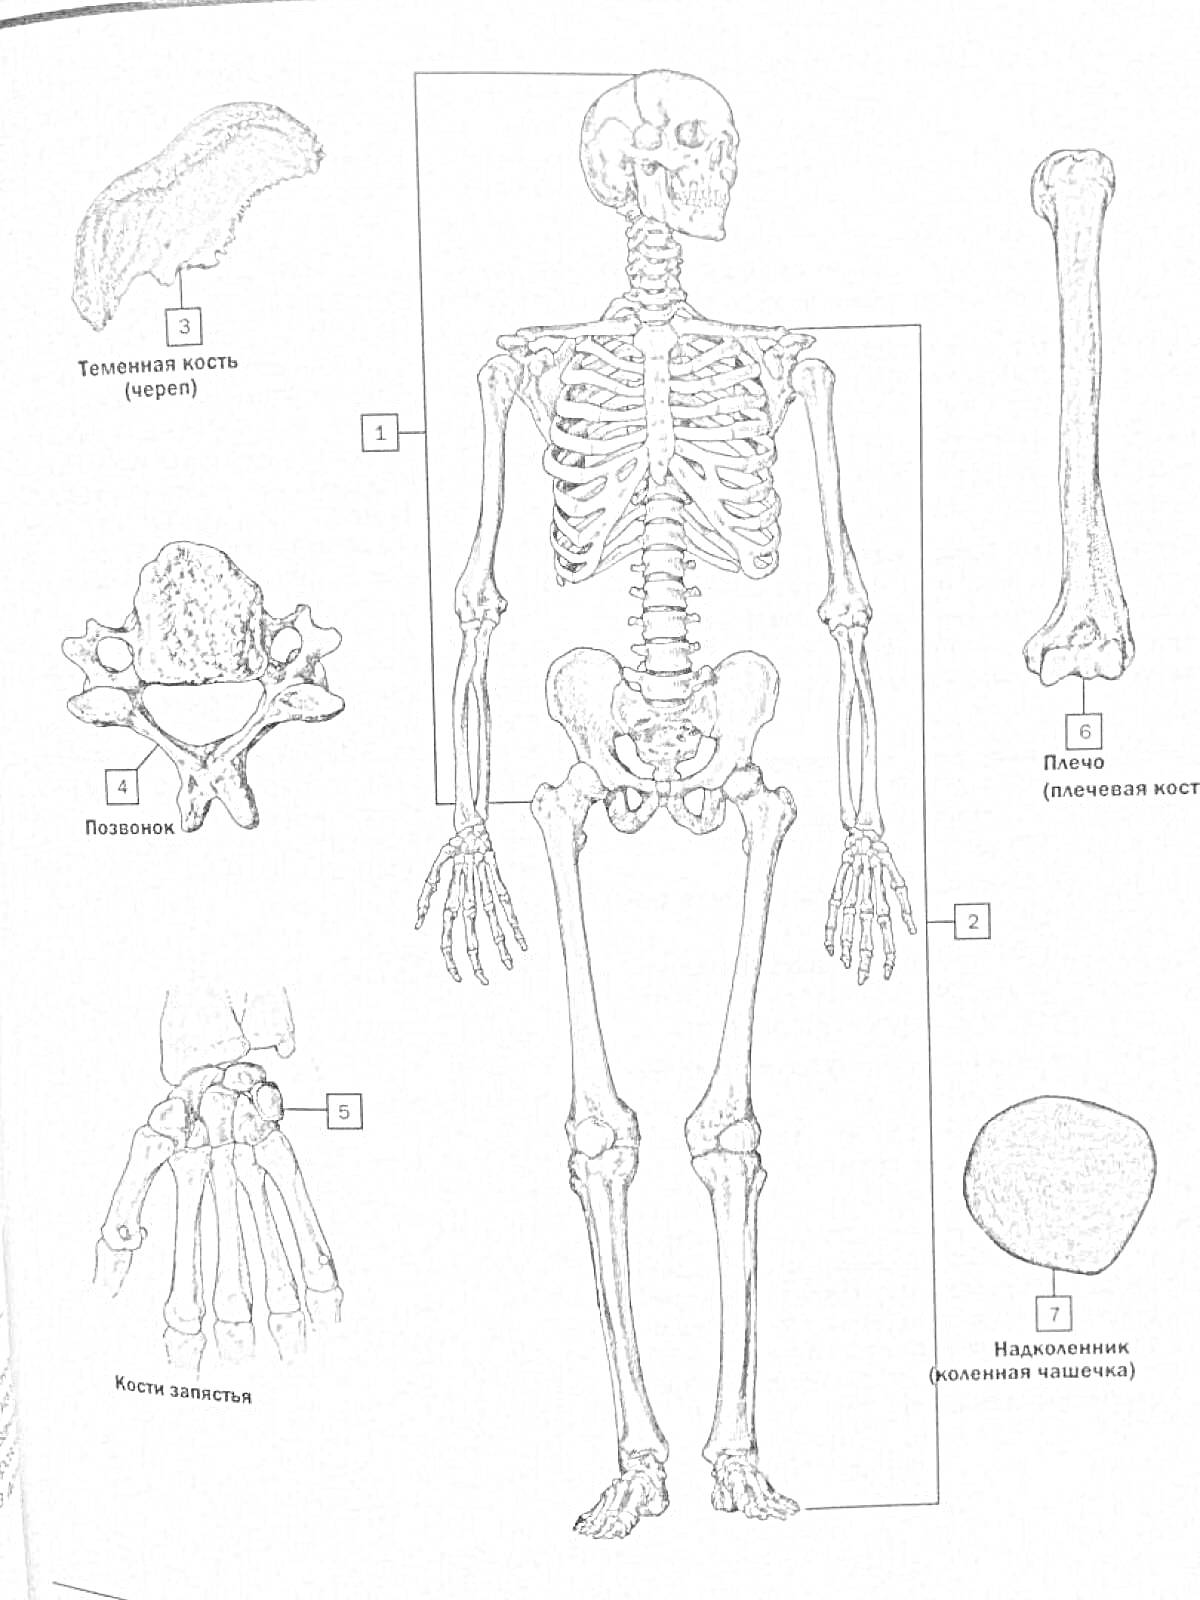 Раскраска Атлас анатомии Неттера - Тазовая кость, Лопатка, Поясничный позвонок, Кости запястья, Плечевая кость, Надколенник, Скелет человека